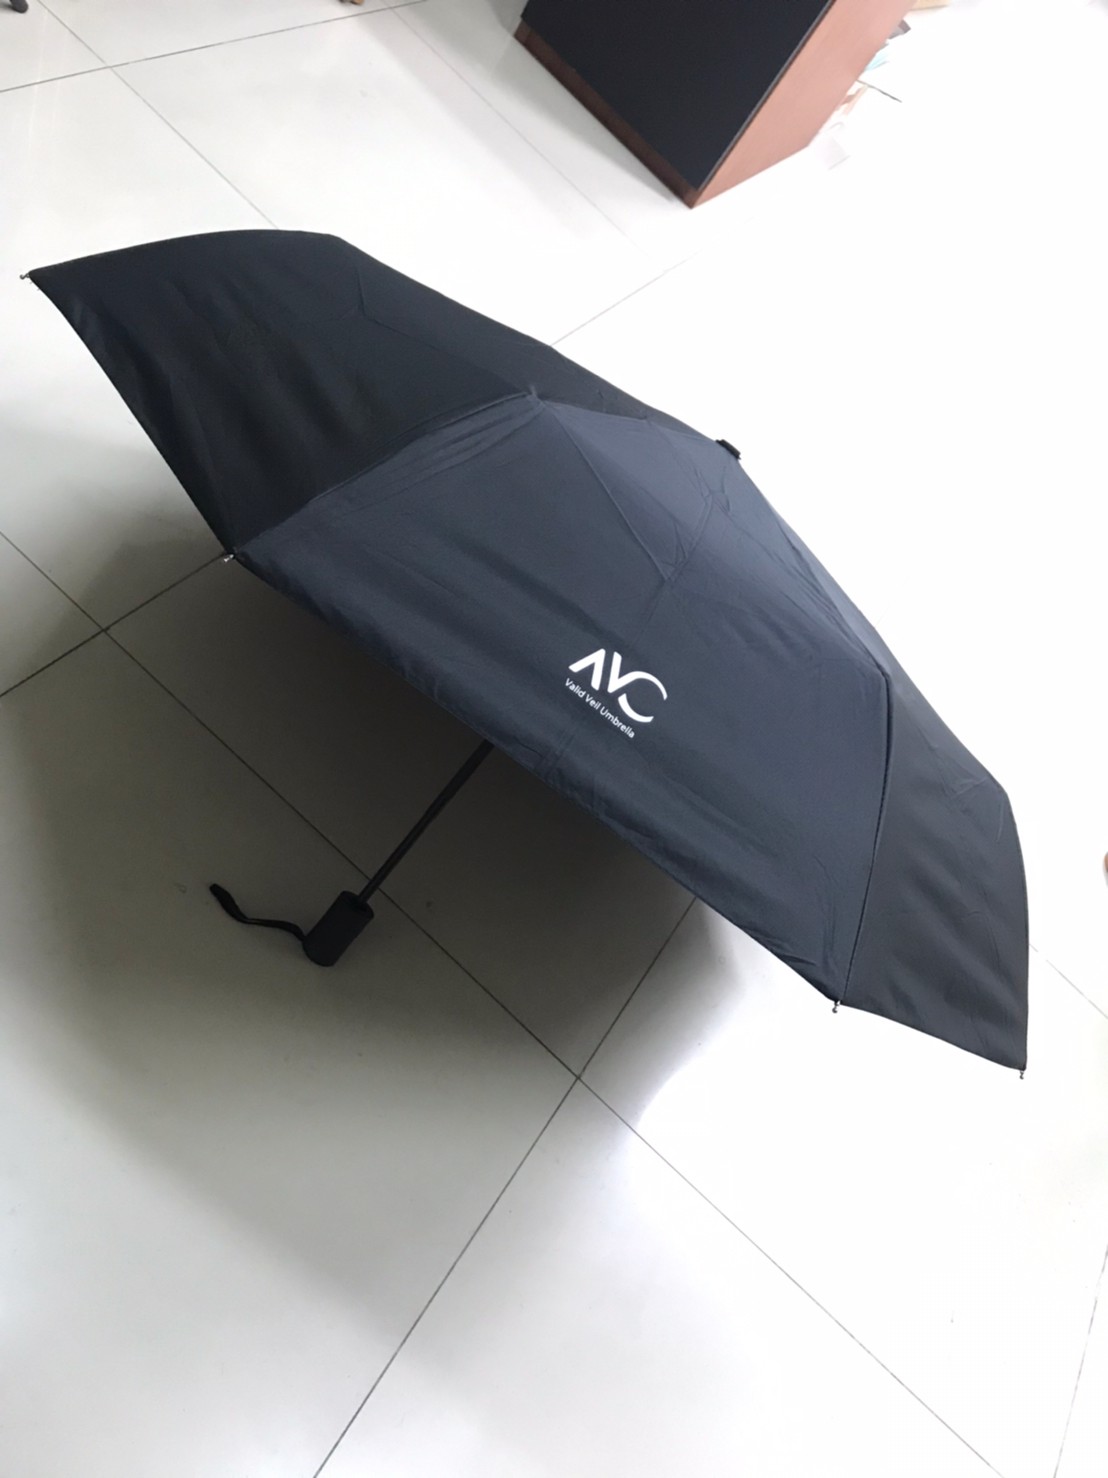 ร่มกันฝน Umbrella ร ร่มแฟชั่น ร่มกันแดด กันUV ร่มพับได้น้ำหนักเบาพกพาสะดวก ผ้าร่ม ทอแบบหนากว่าปกติป้องกันแสงยูวีได้อย่างดี น้ำไม่ซึม VAC